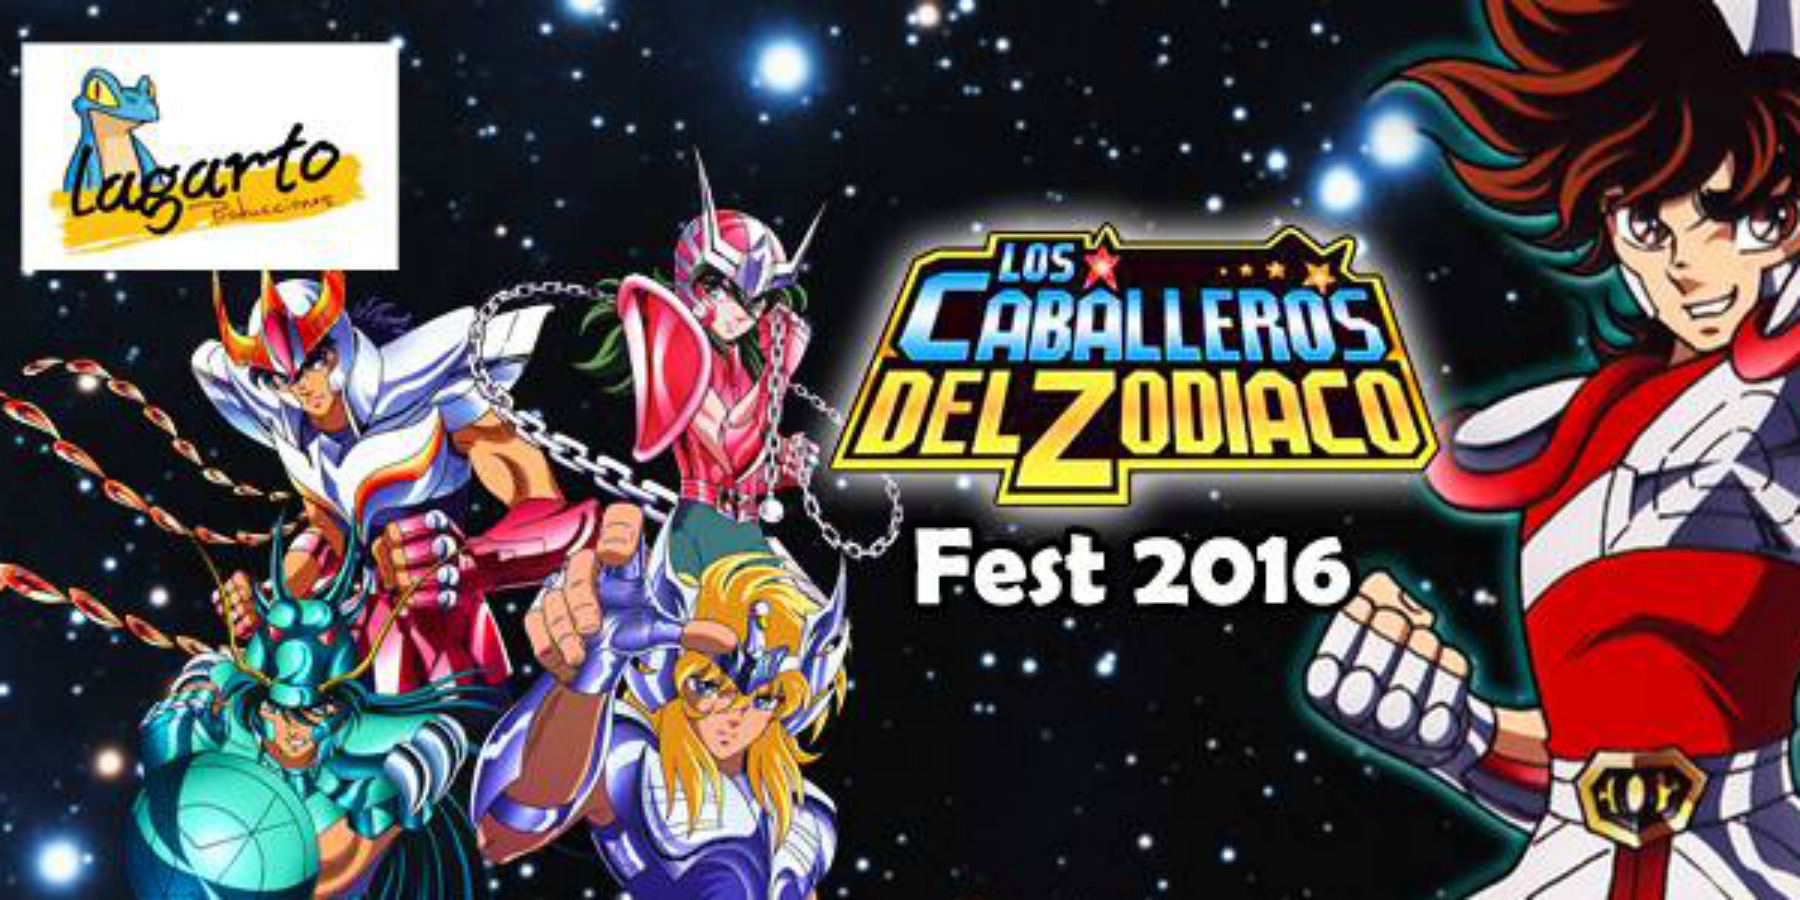 Los Caballeros del Zodiaco Fest 2016